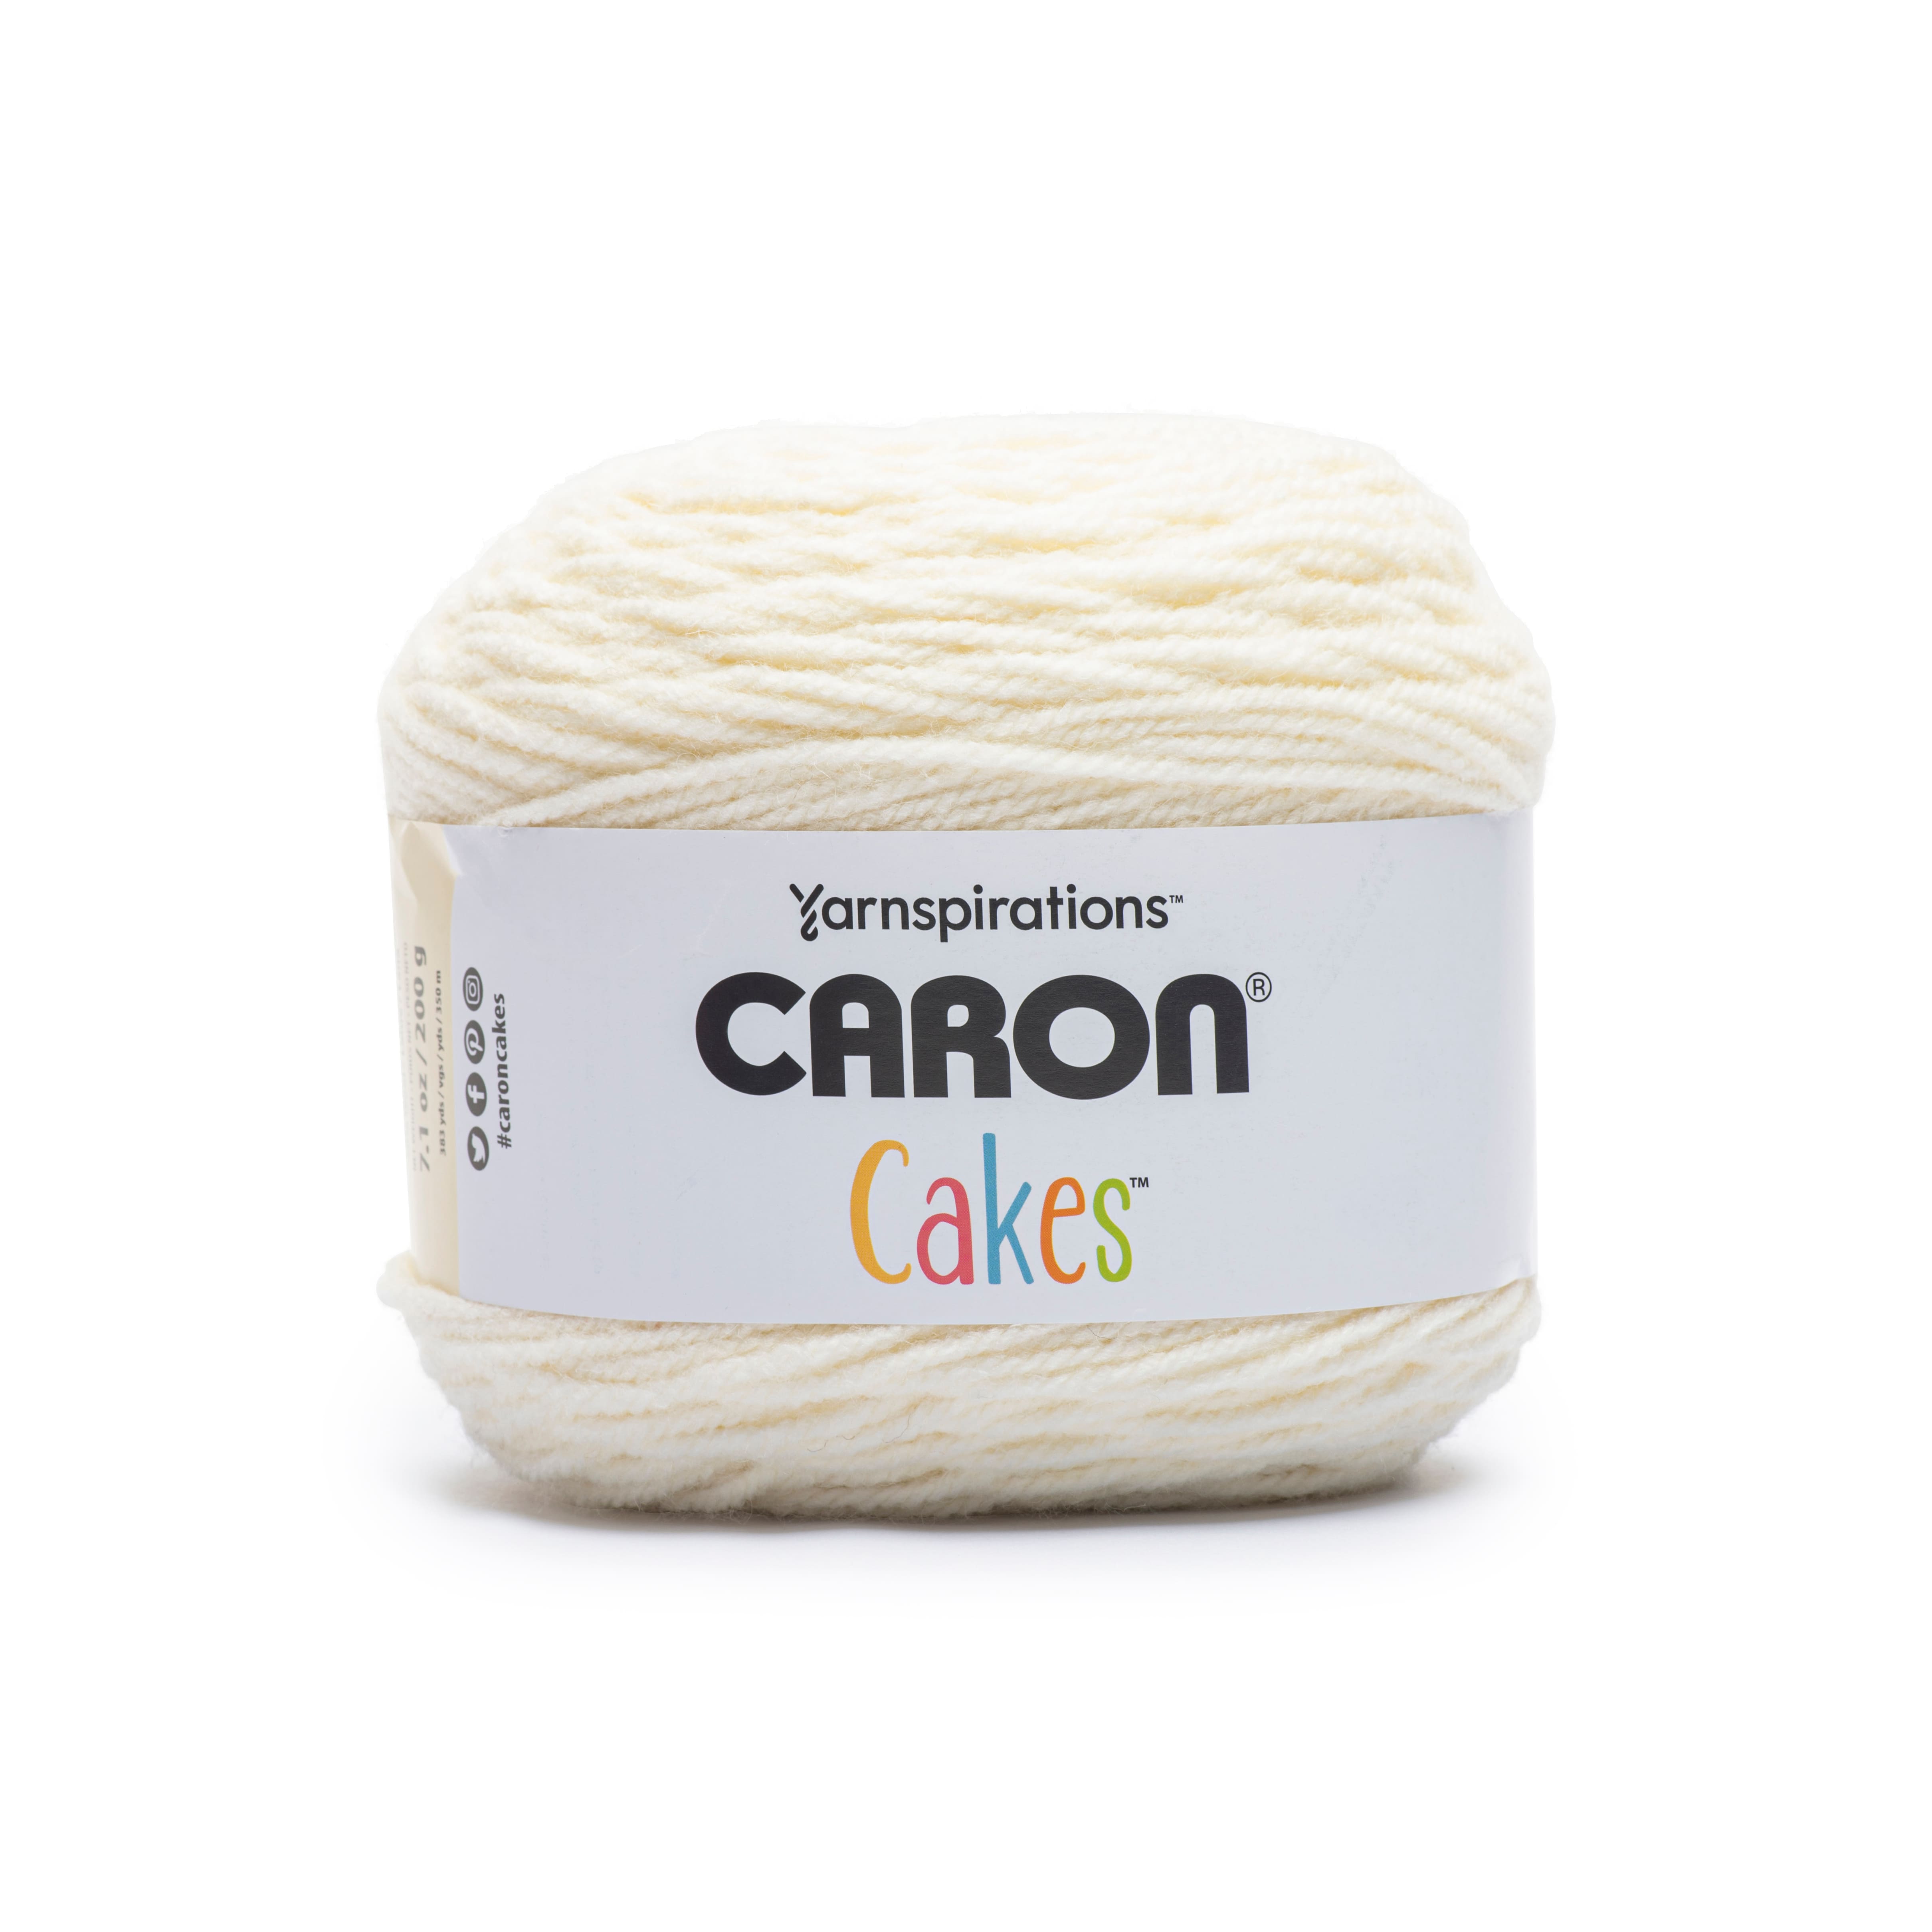  Caron Cakes Self Striping Yarn 383 yd/350 m 7.1 oz/200